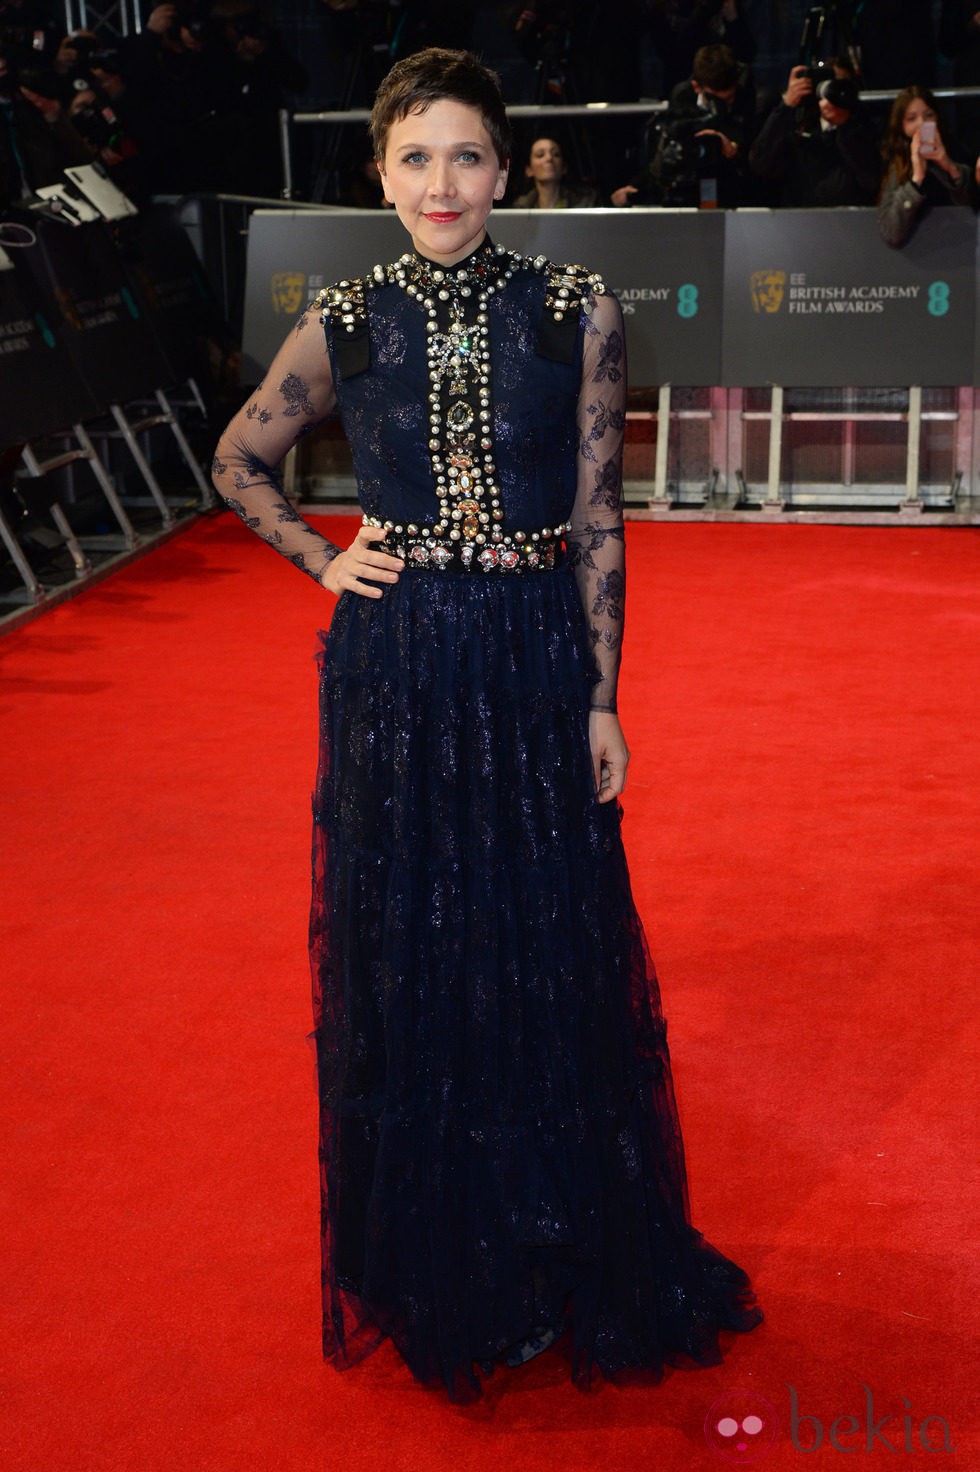 Maggie Gyllenhaal en la alfombra roja de los BAFTA 2014